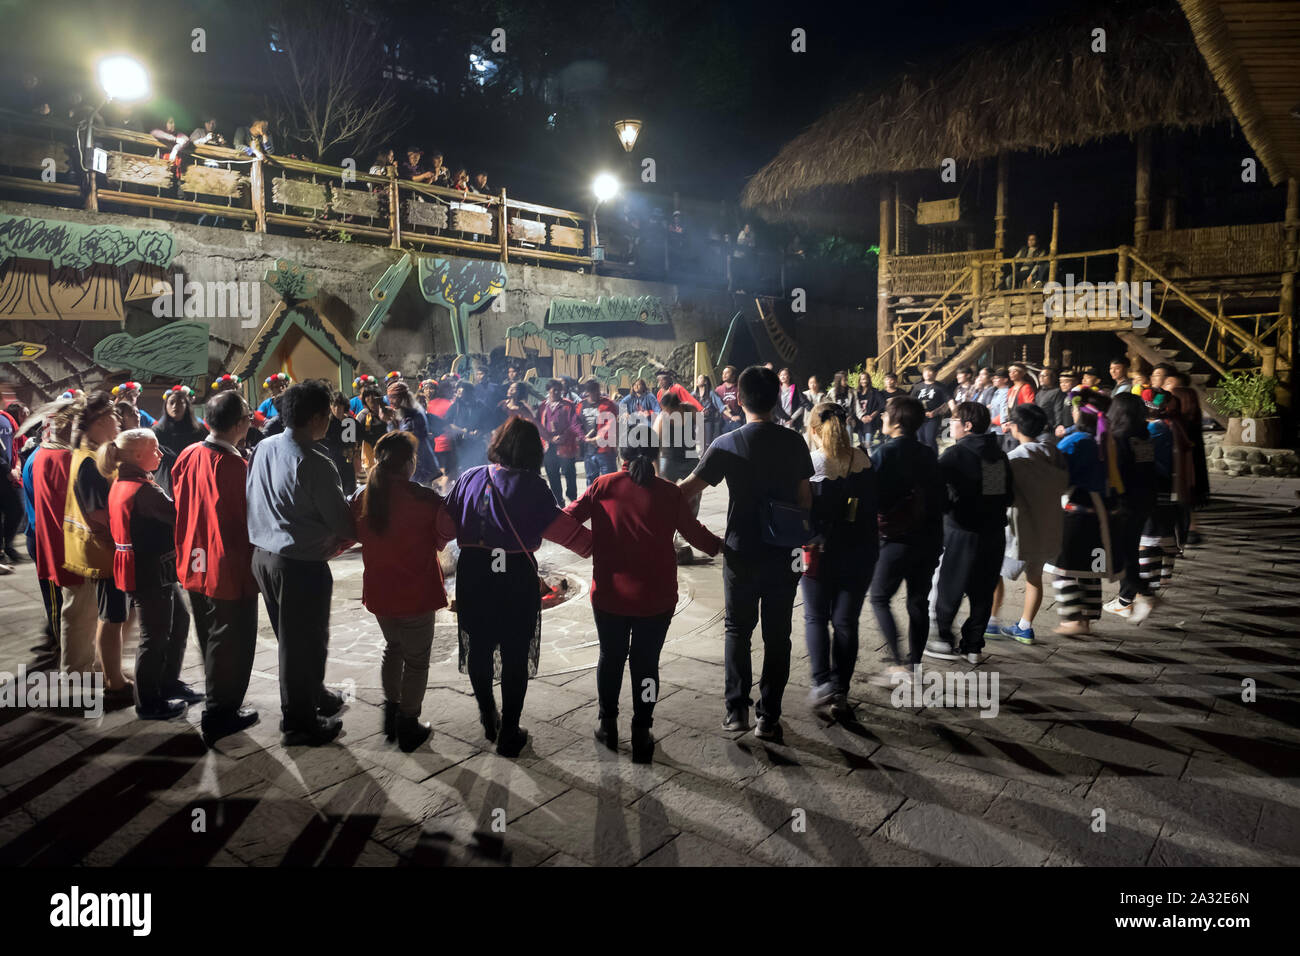 Les citoyens, les touristes et Tsou participants tout au long de la nuit de la danse au cours de l'Mayasvi Tsou du festival dans le village de Tefuye dans la montagne Alishan, Chiayi, Taïwan, l'Asie Banque D'Images